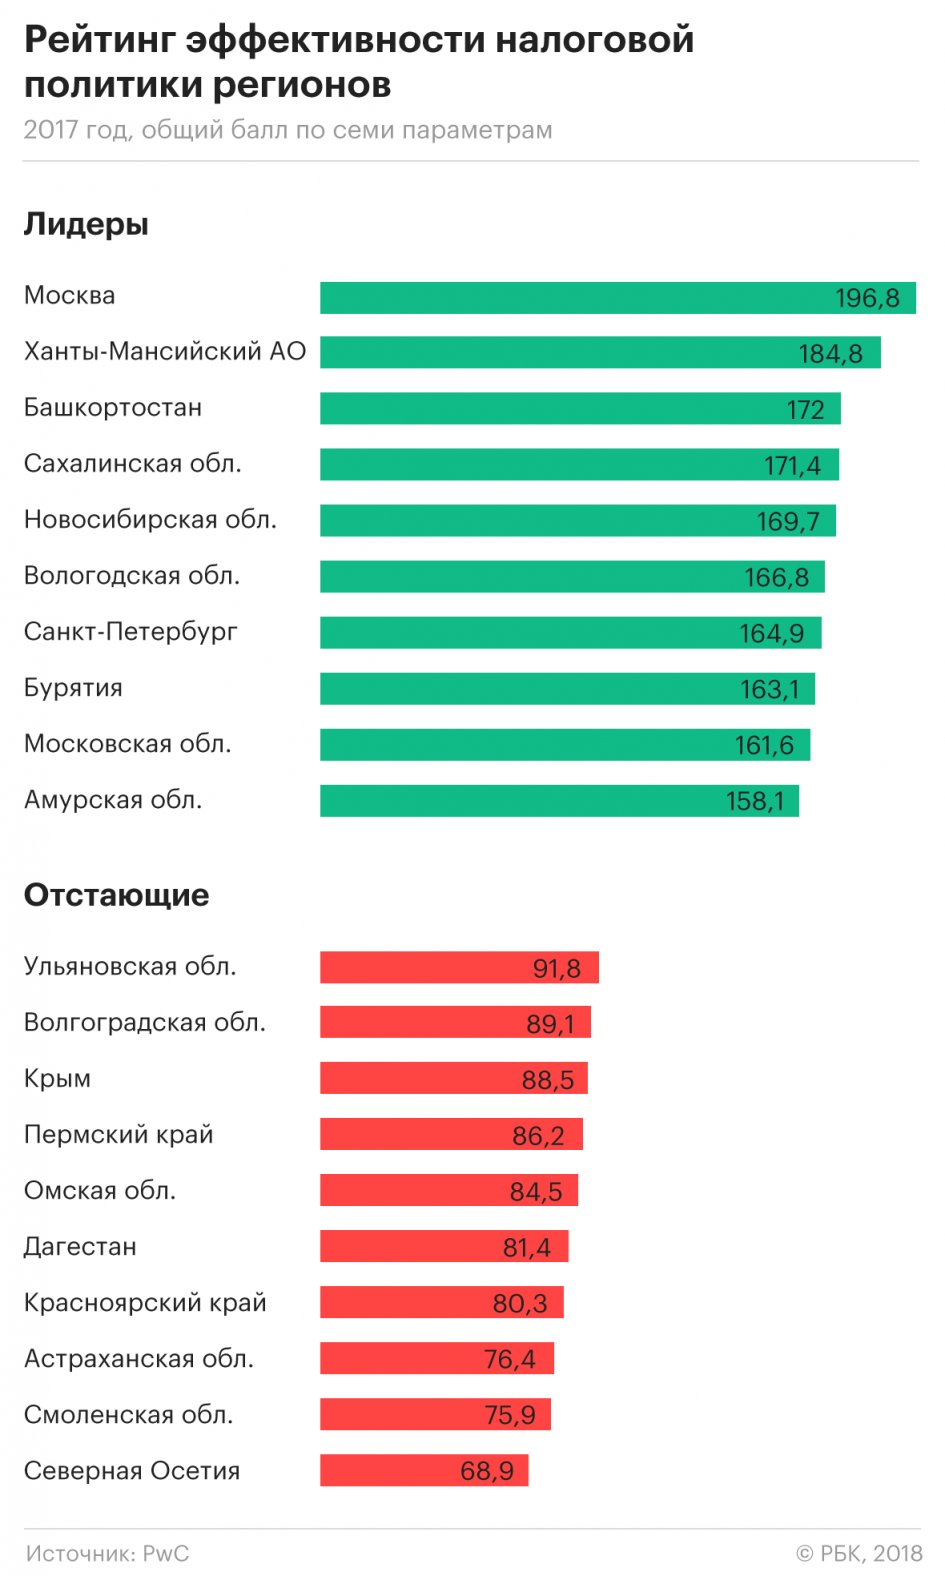 Новосибирская область вышла в лидеры по налоговой эффективности